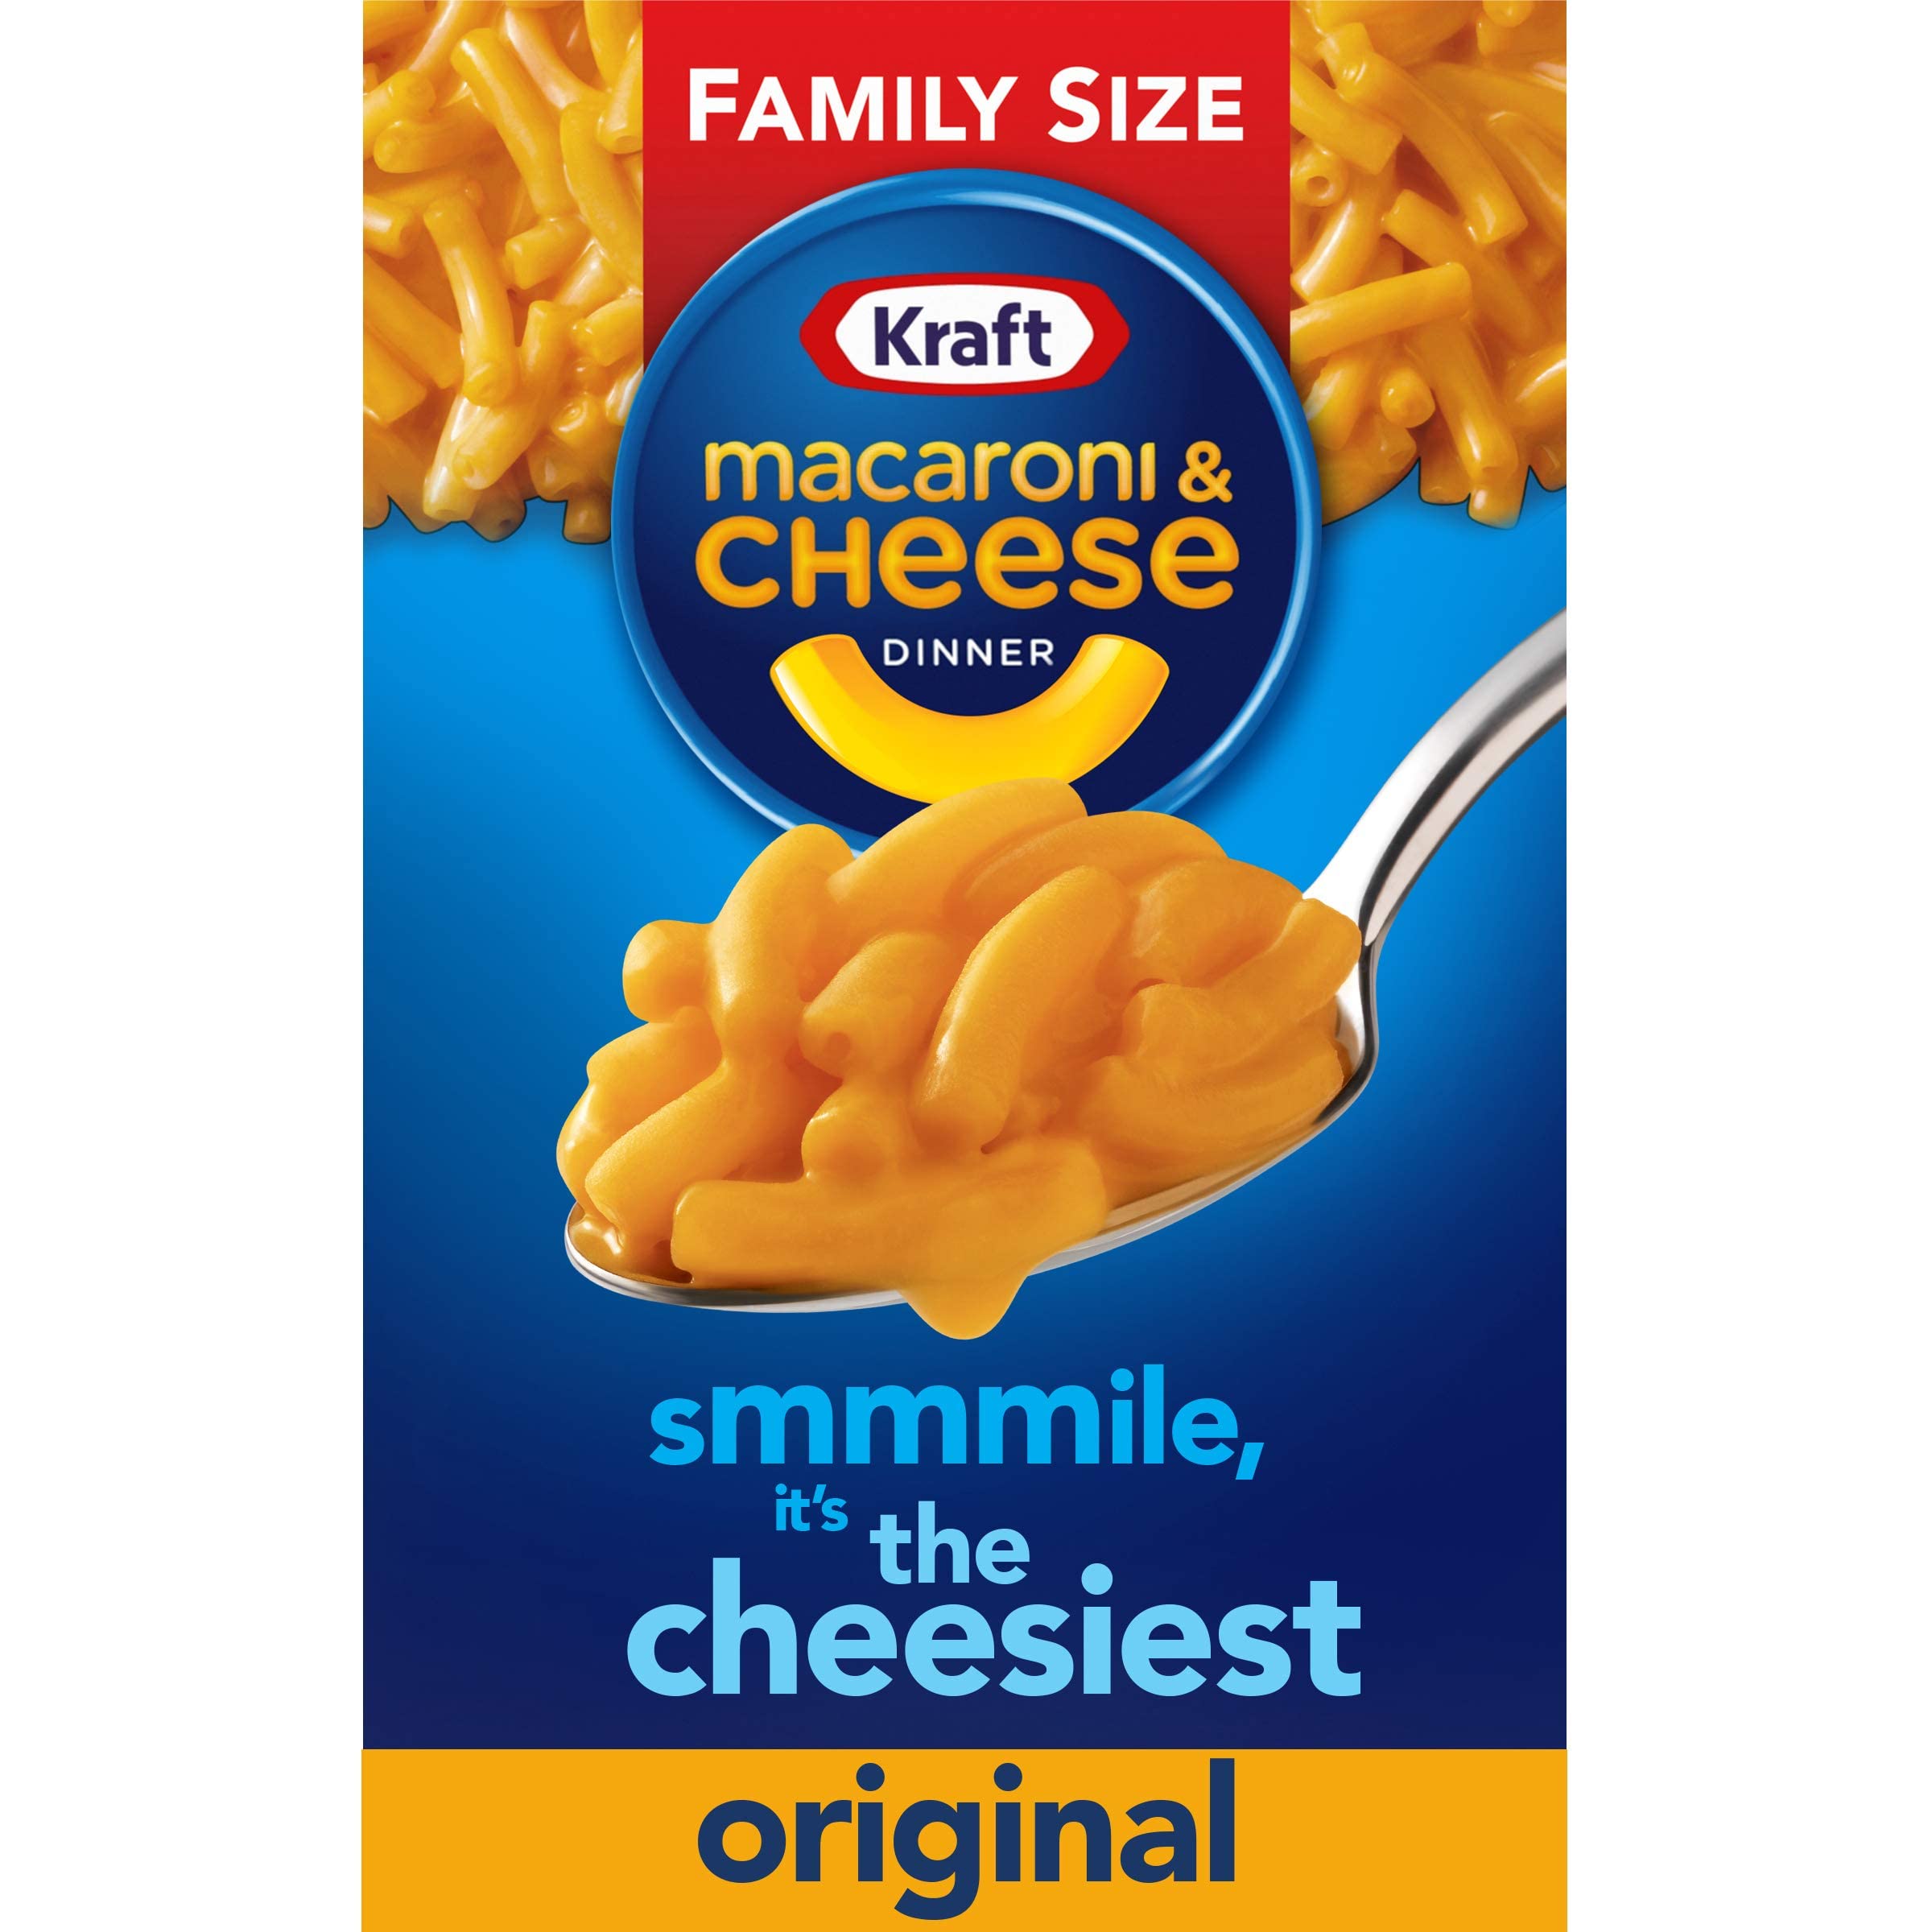 14.5-Oz. Kraft Original Macaroni & Cheese Family Size Dinner Box $1.55 ($0.11 / Oz.) w/ S&S + Free Shipping w/ Prime or on $35+